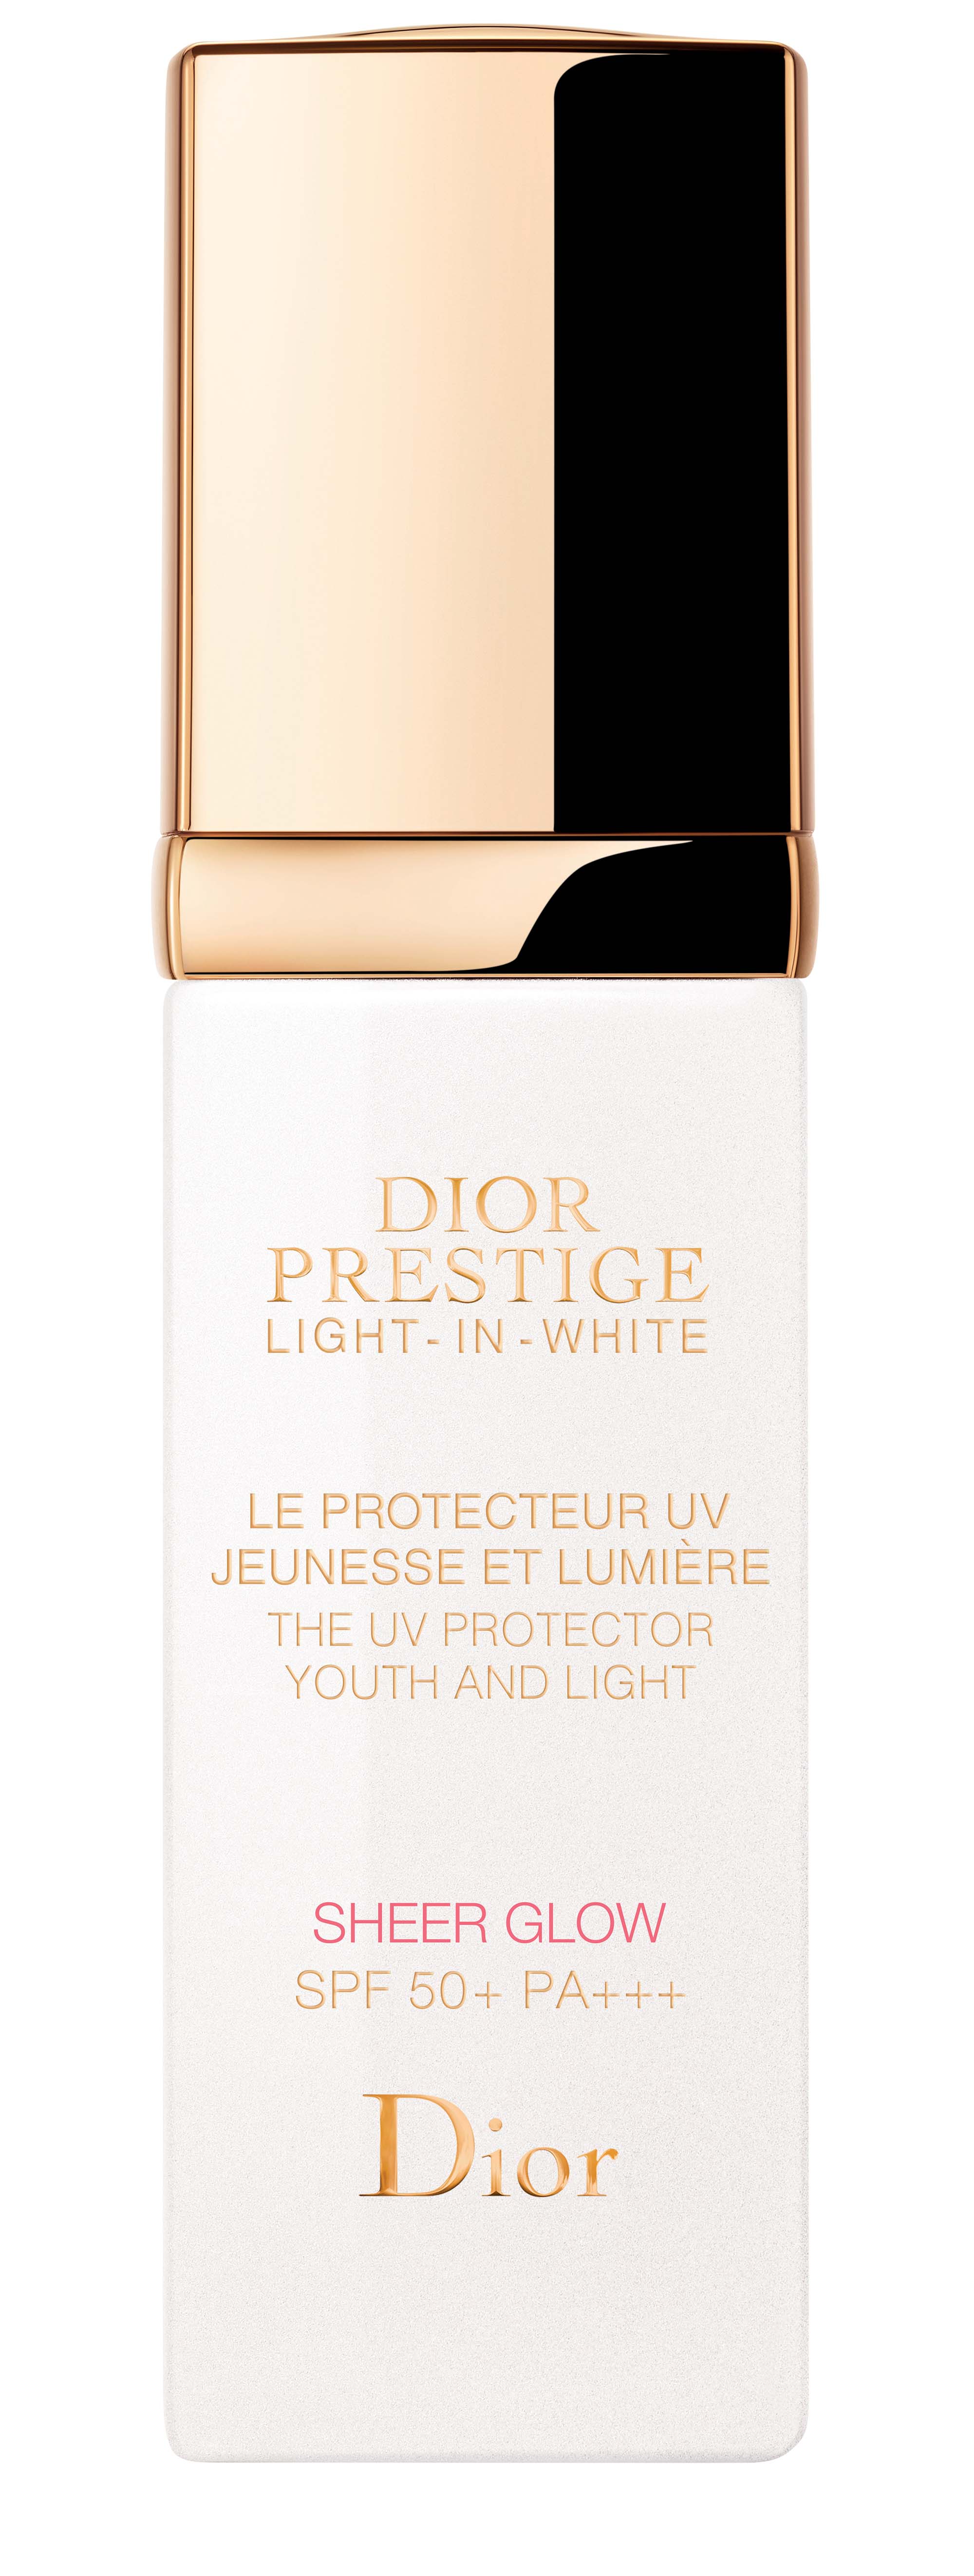 kem chống nắng Sheer Glow Dior